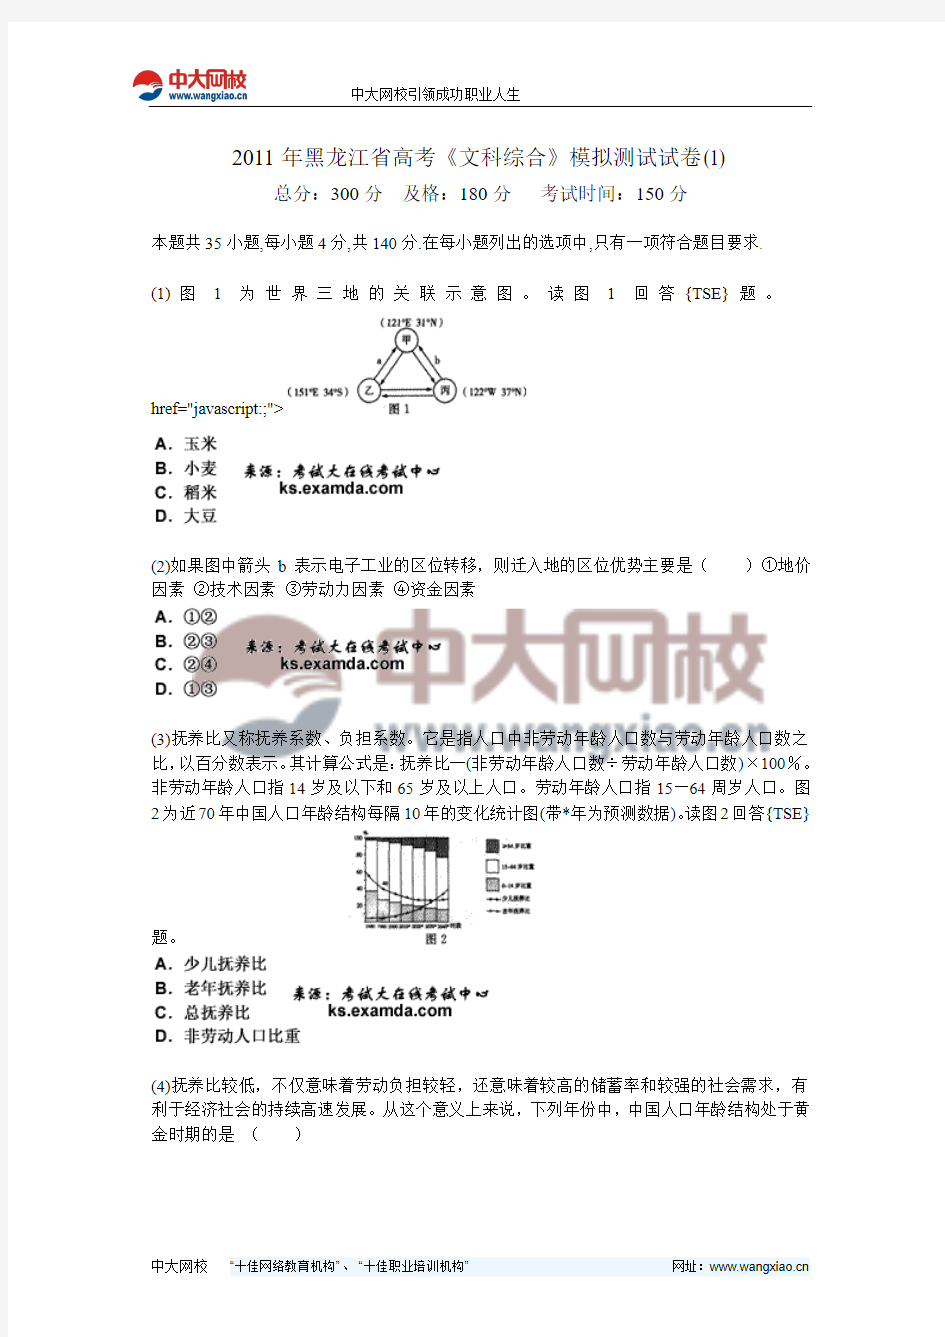 2011年黑龙江省高考《文科综合》模拟测试试卷(1)-中大网校